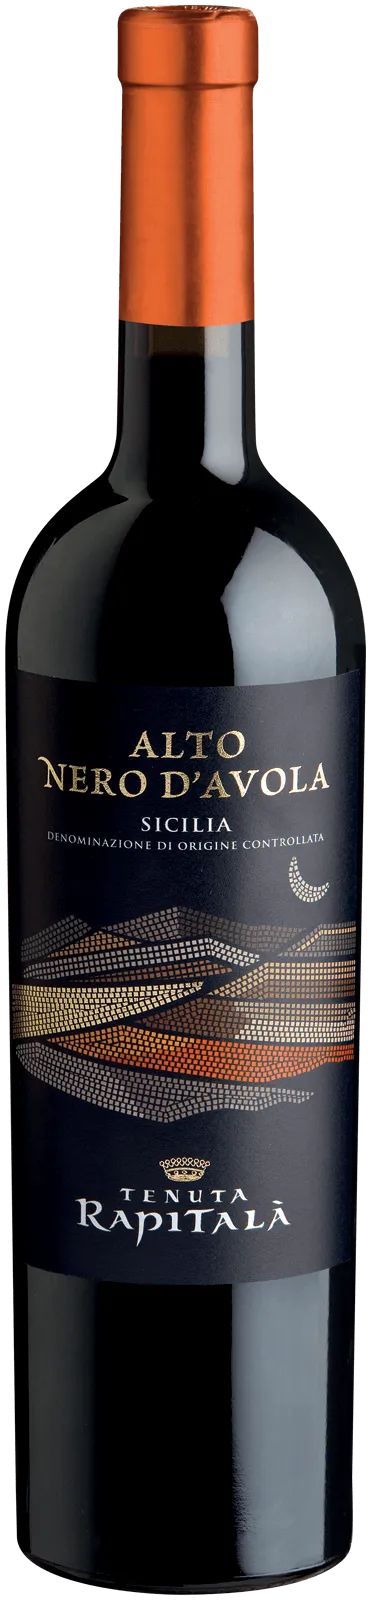 Bottle of Tenuta Rapitalà Alto Nero d'Avola from search results